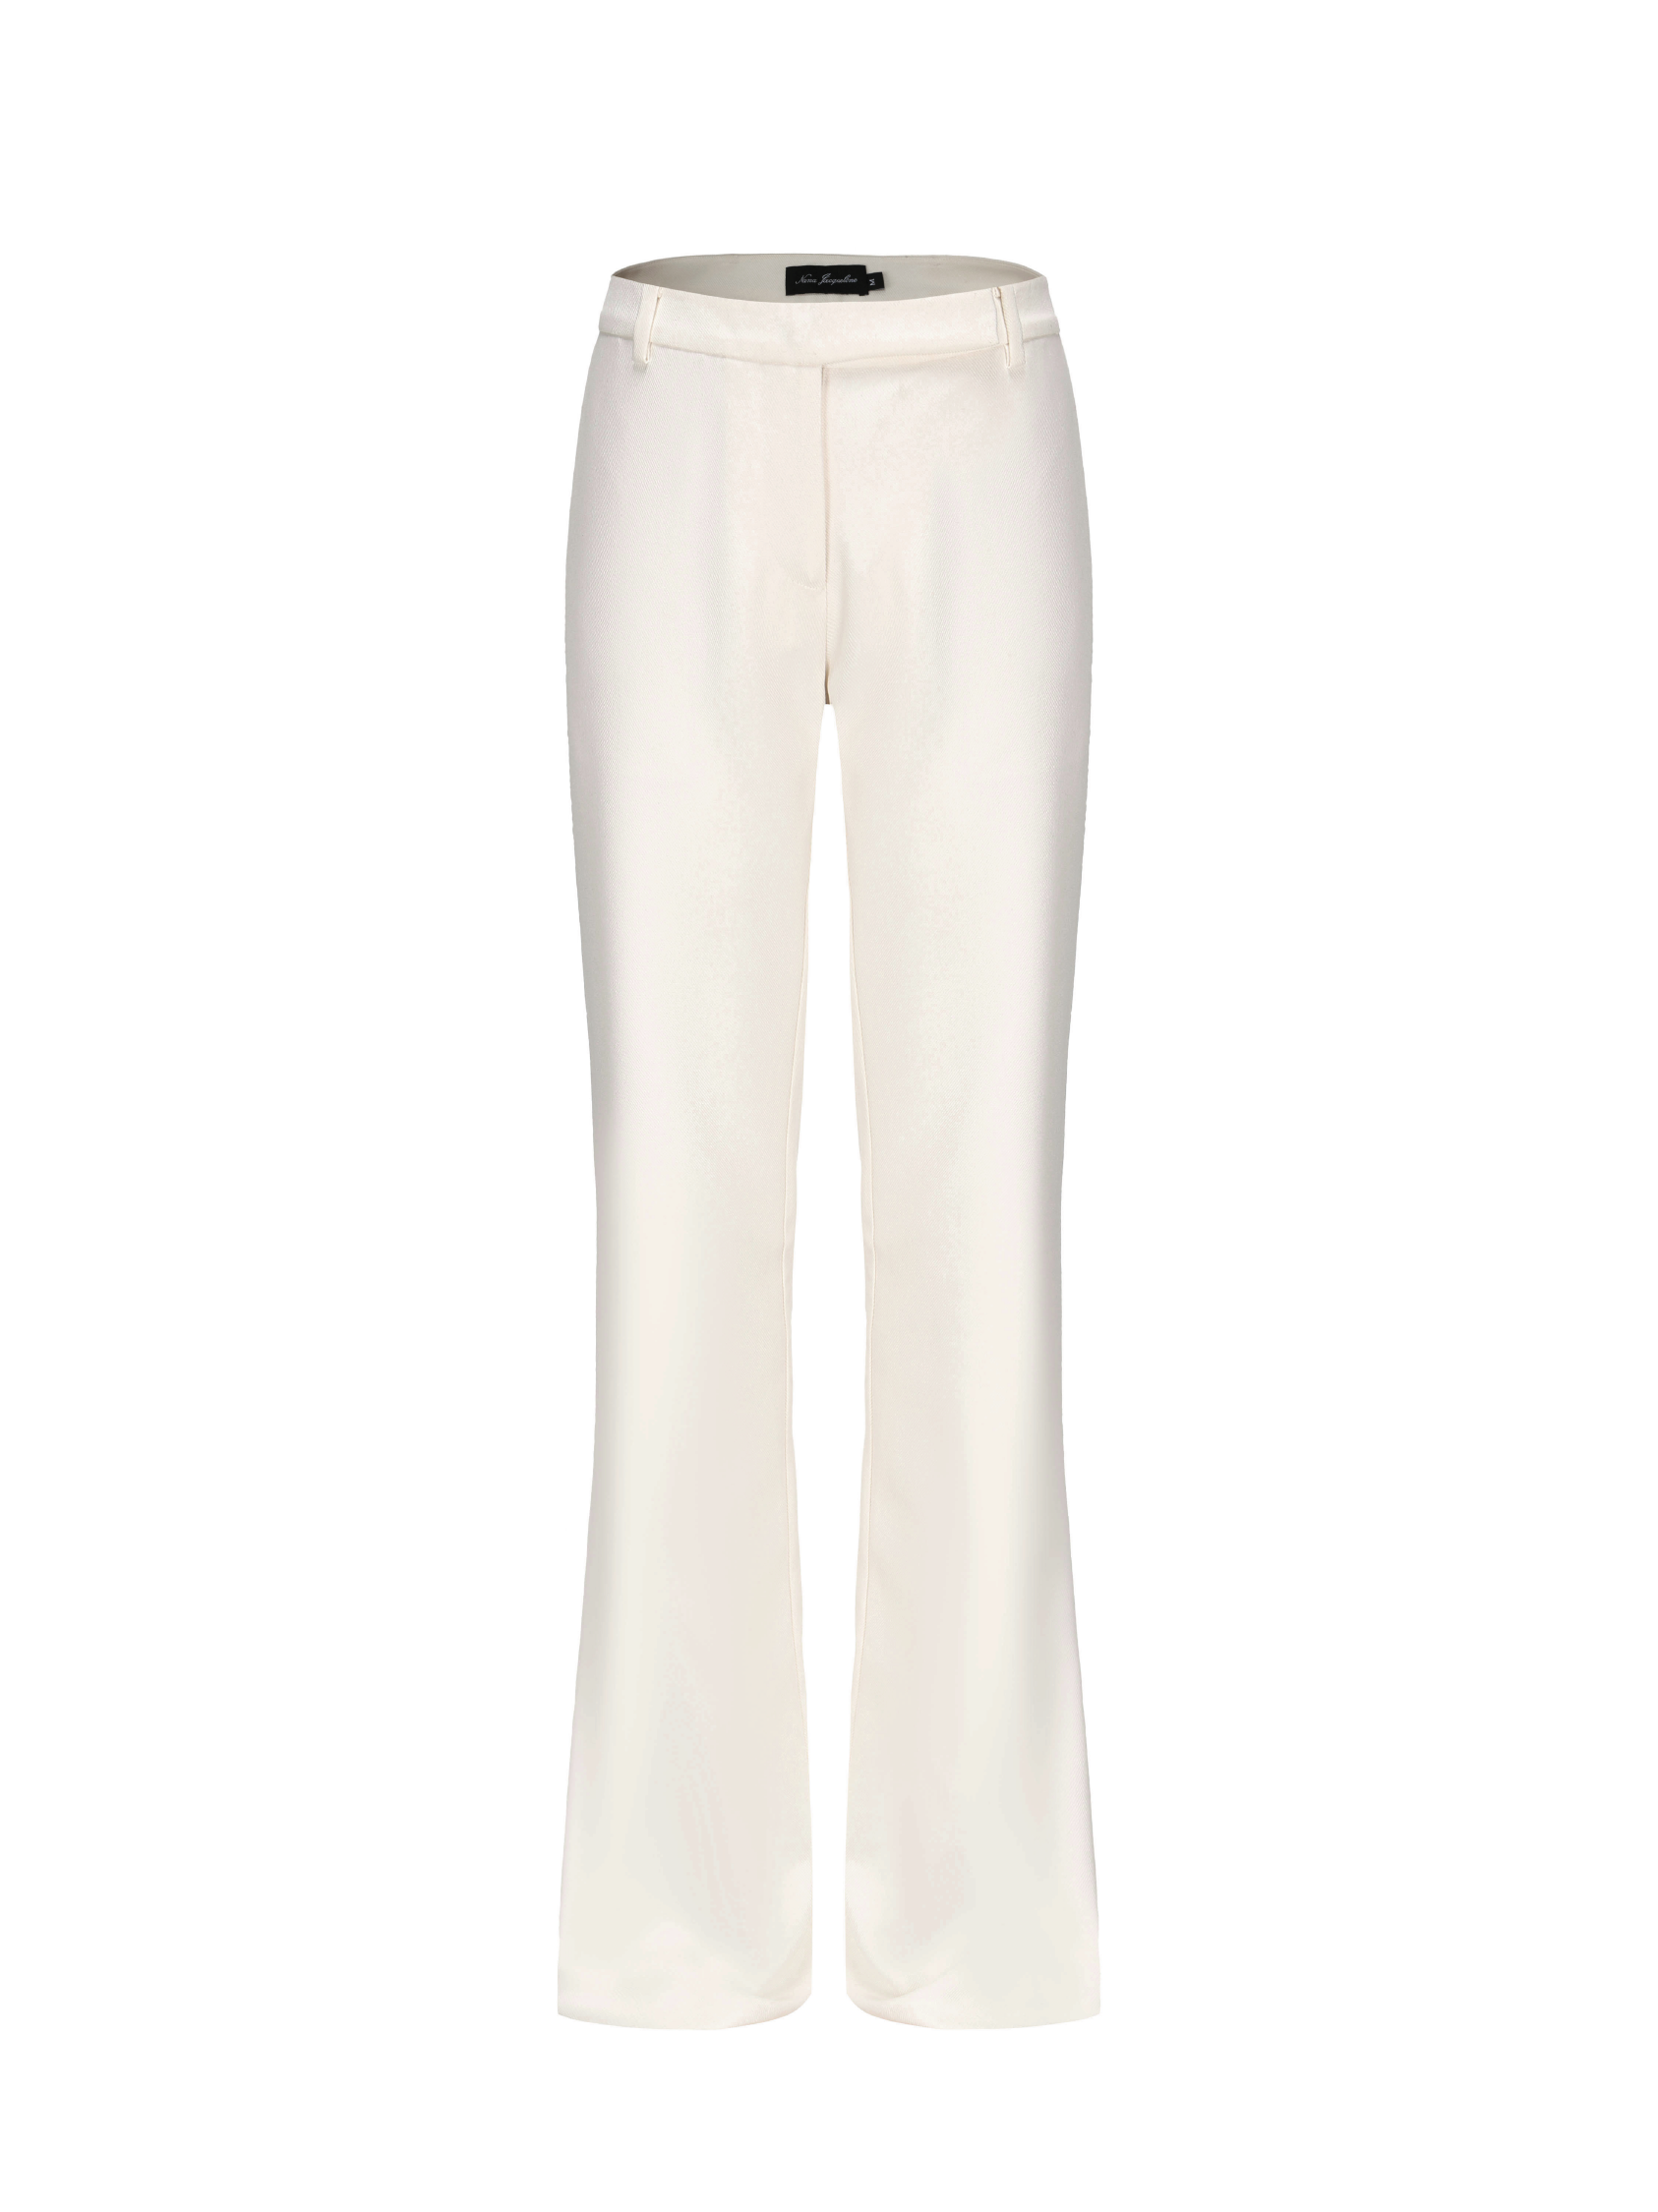 Cambria Pants (White) – Nana Jacqueline